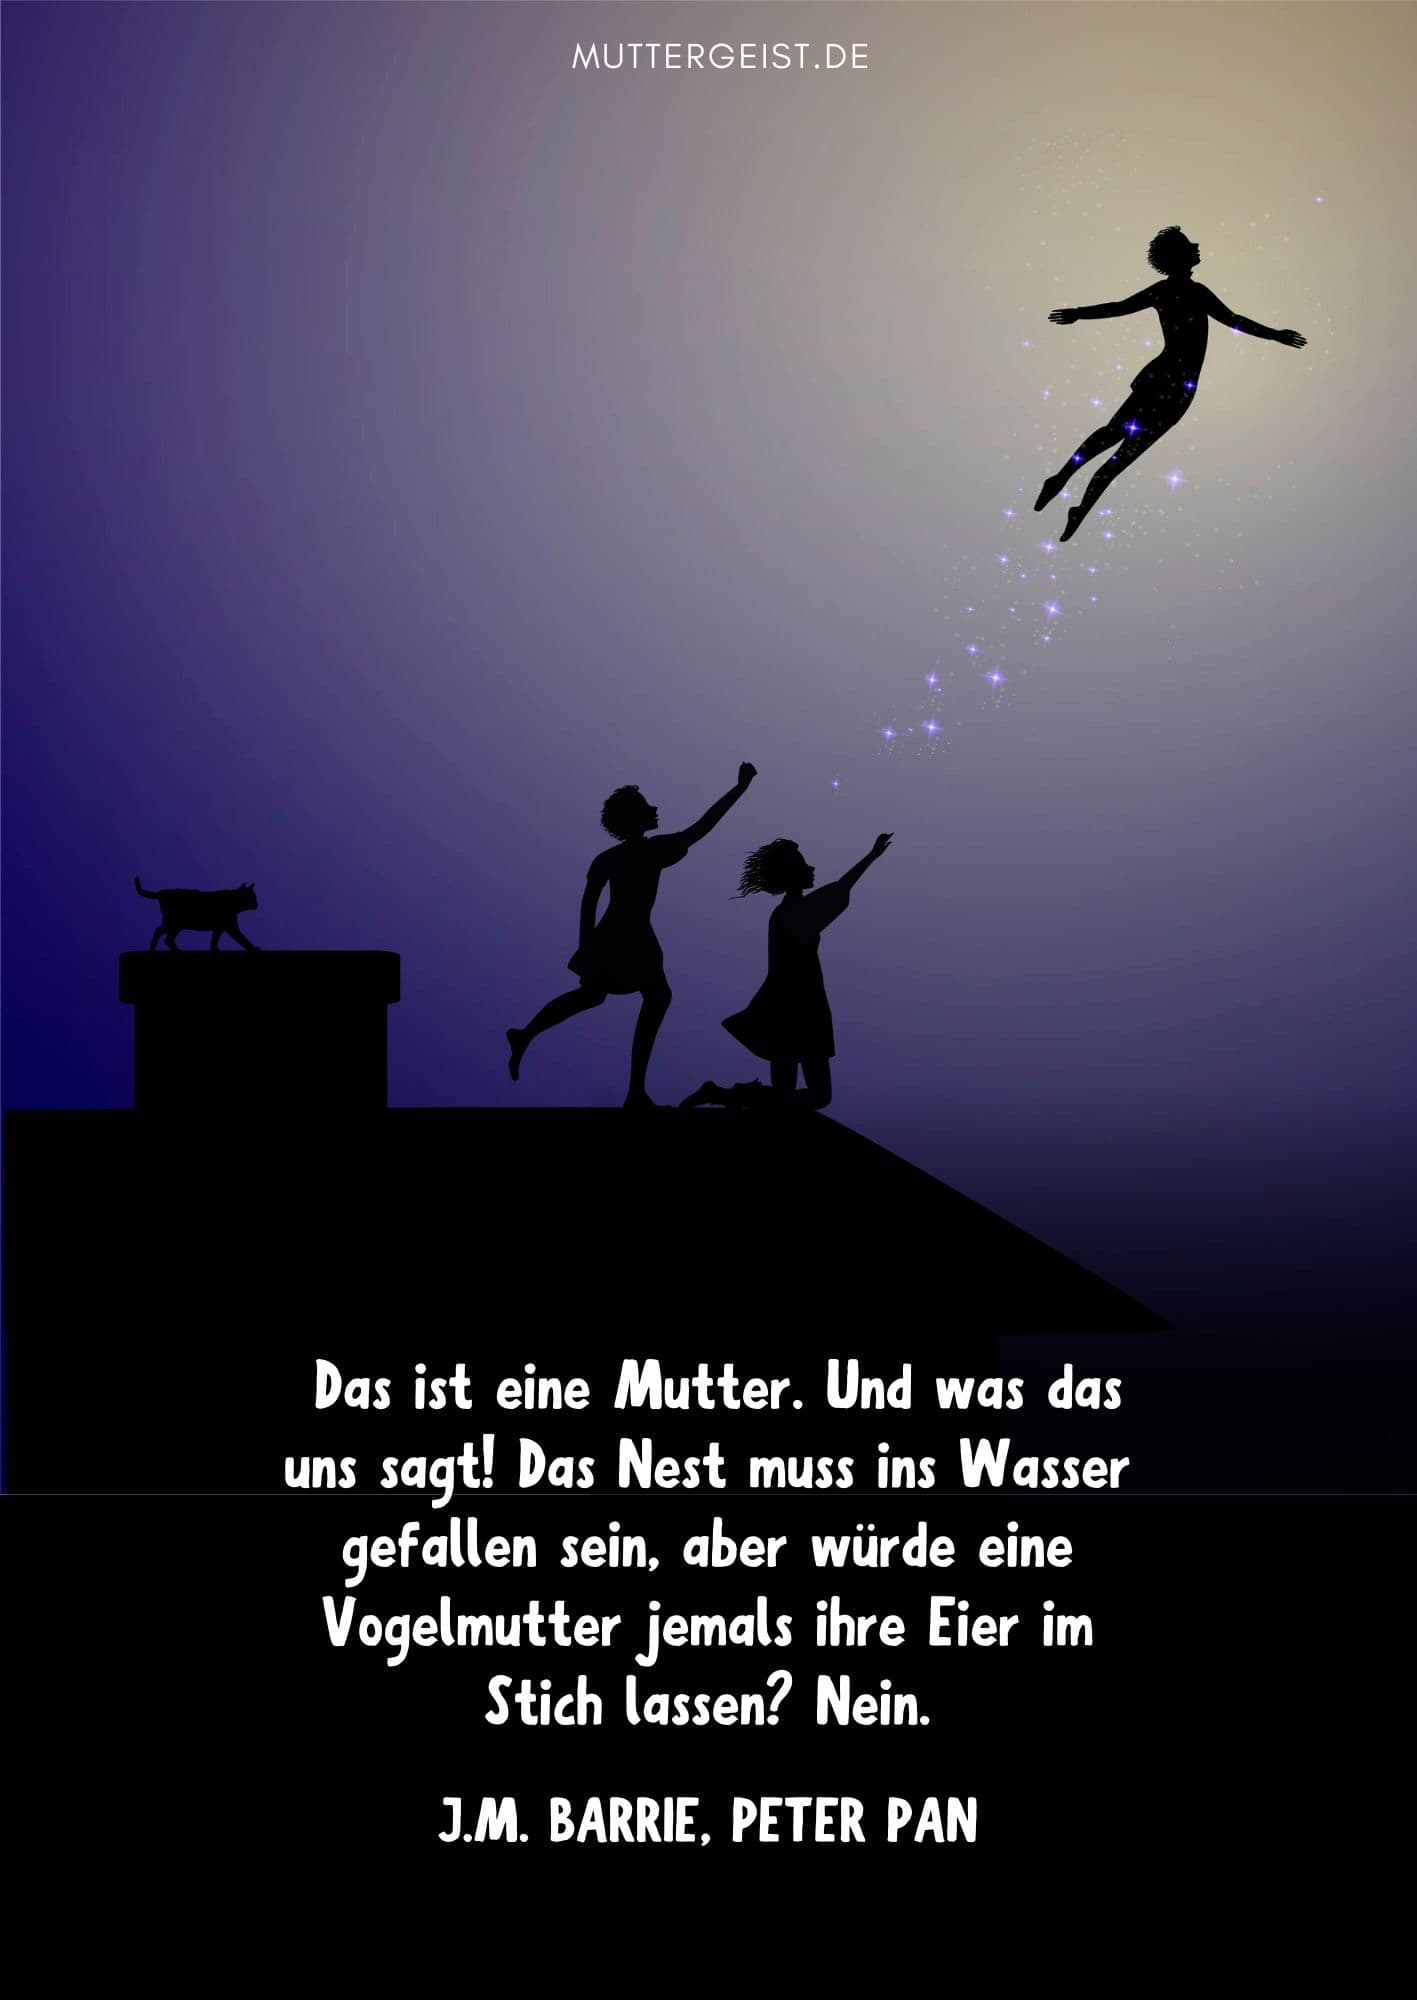 Weise Worte über Mütter von Peter Pan